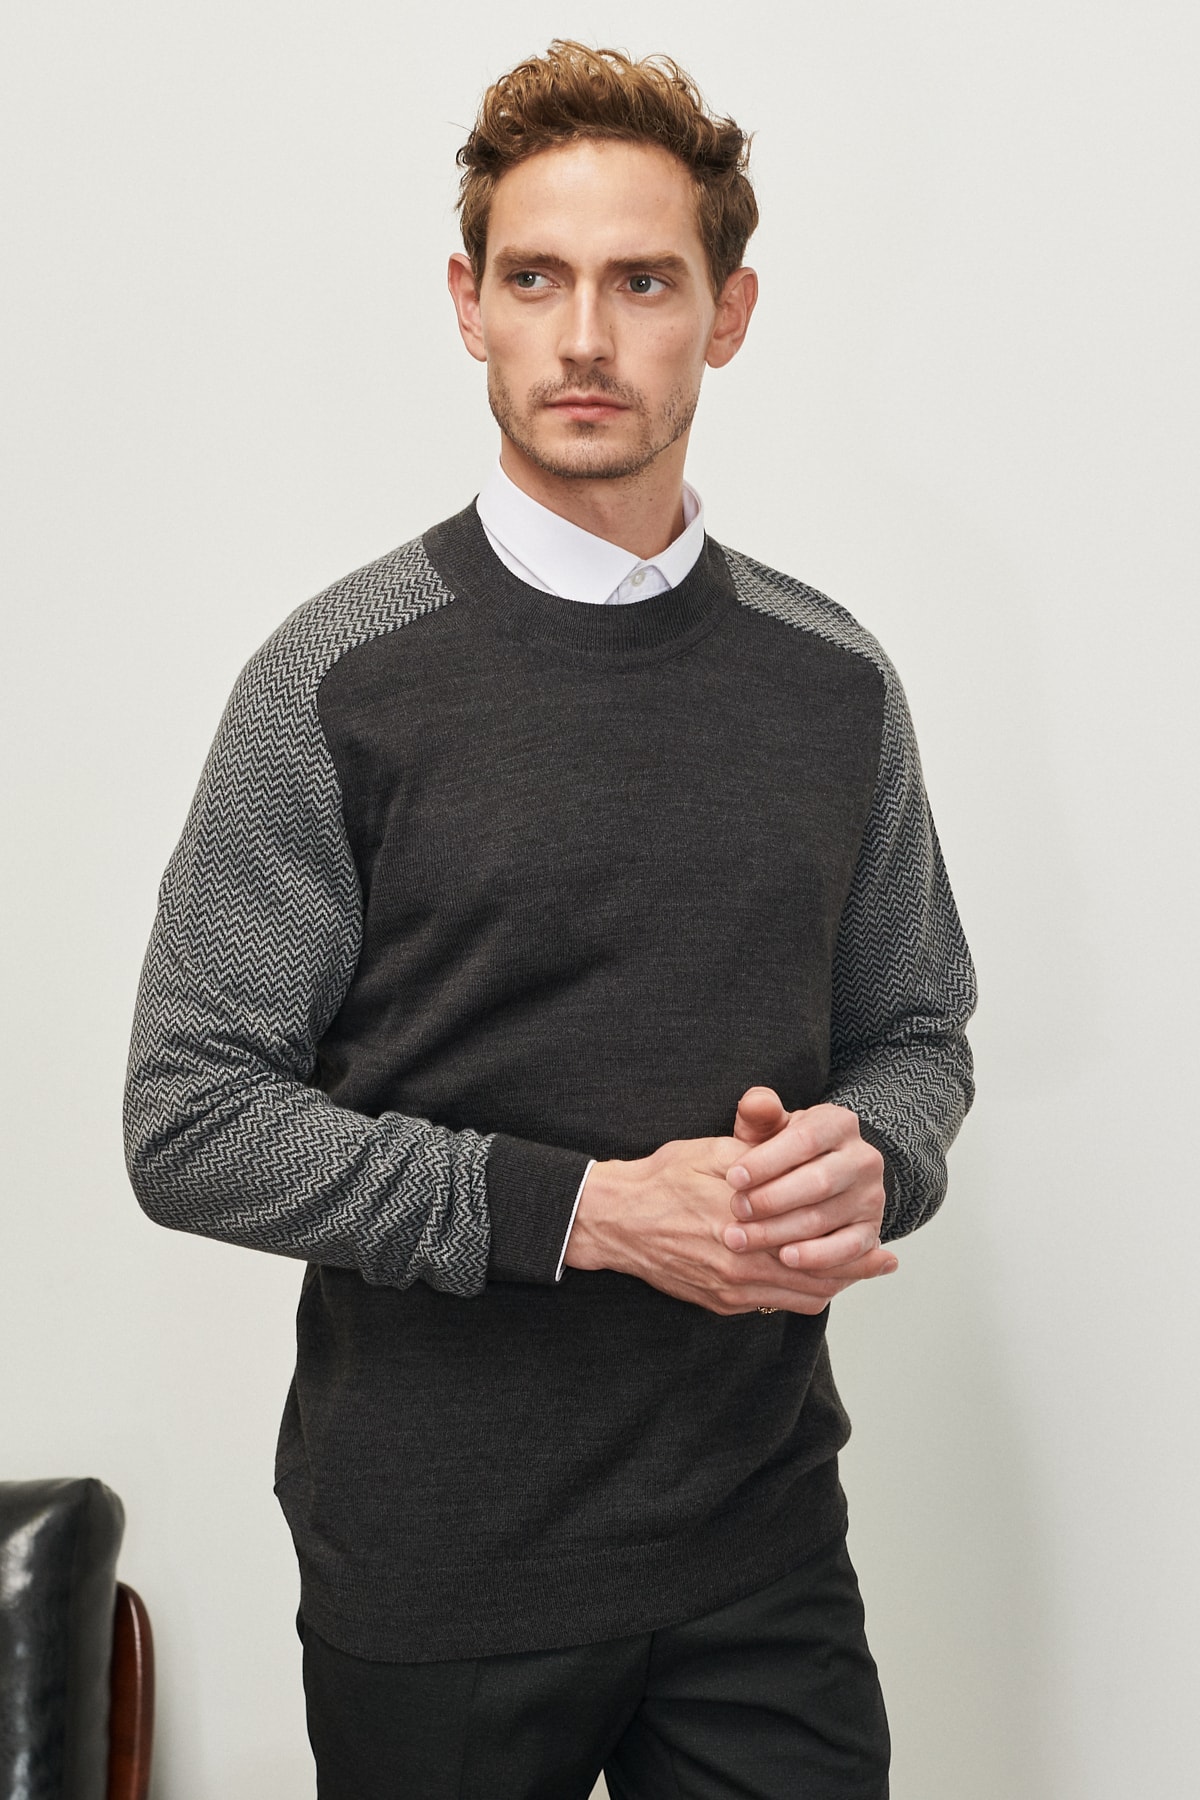 Levně ALTINYILDIZ CLASSICS Men's Anthracite Standard Fit Normal Cut Half Turtleneck Jacquard Knitwear Sweater.